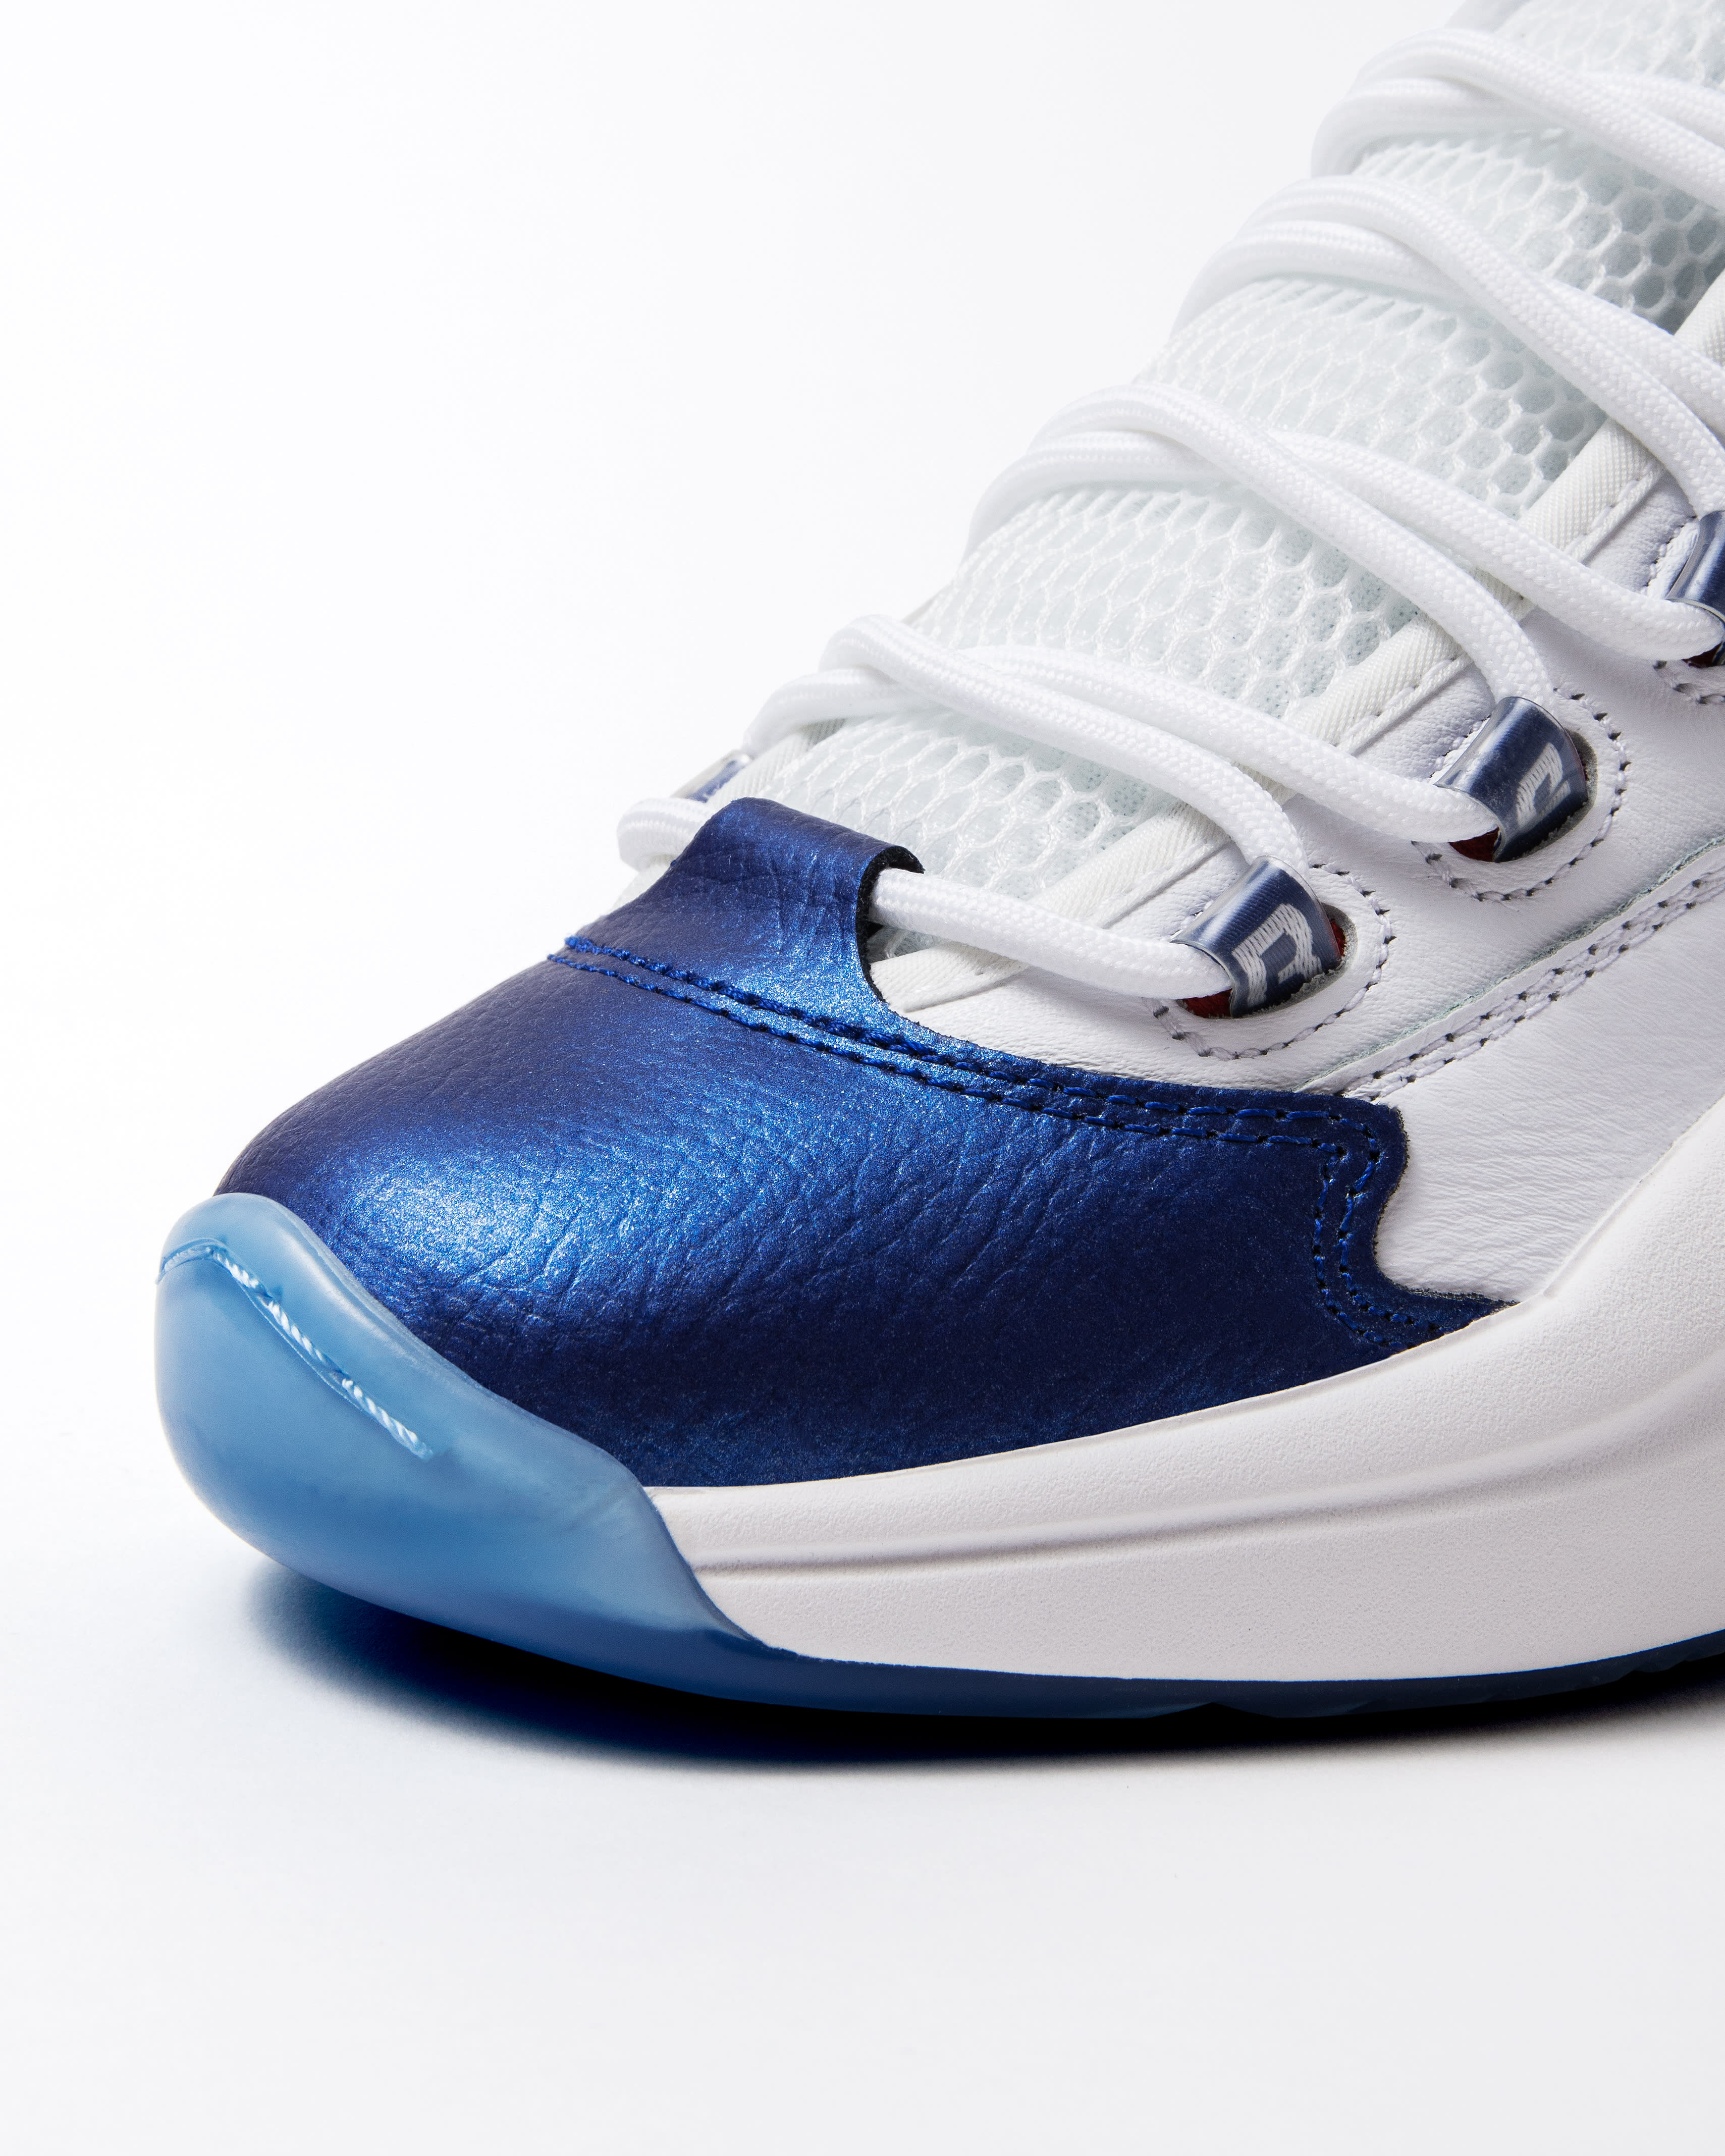 Reebok Question Blue Toe 2022 Release Packer Shoes Toe